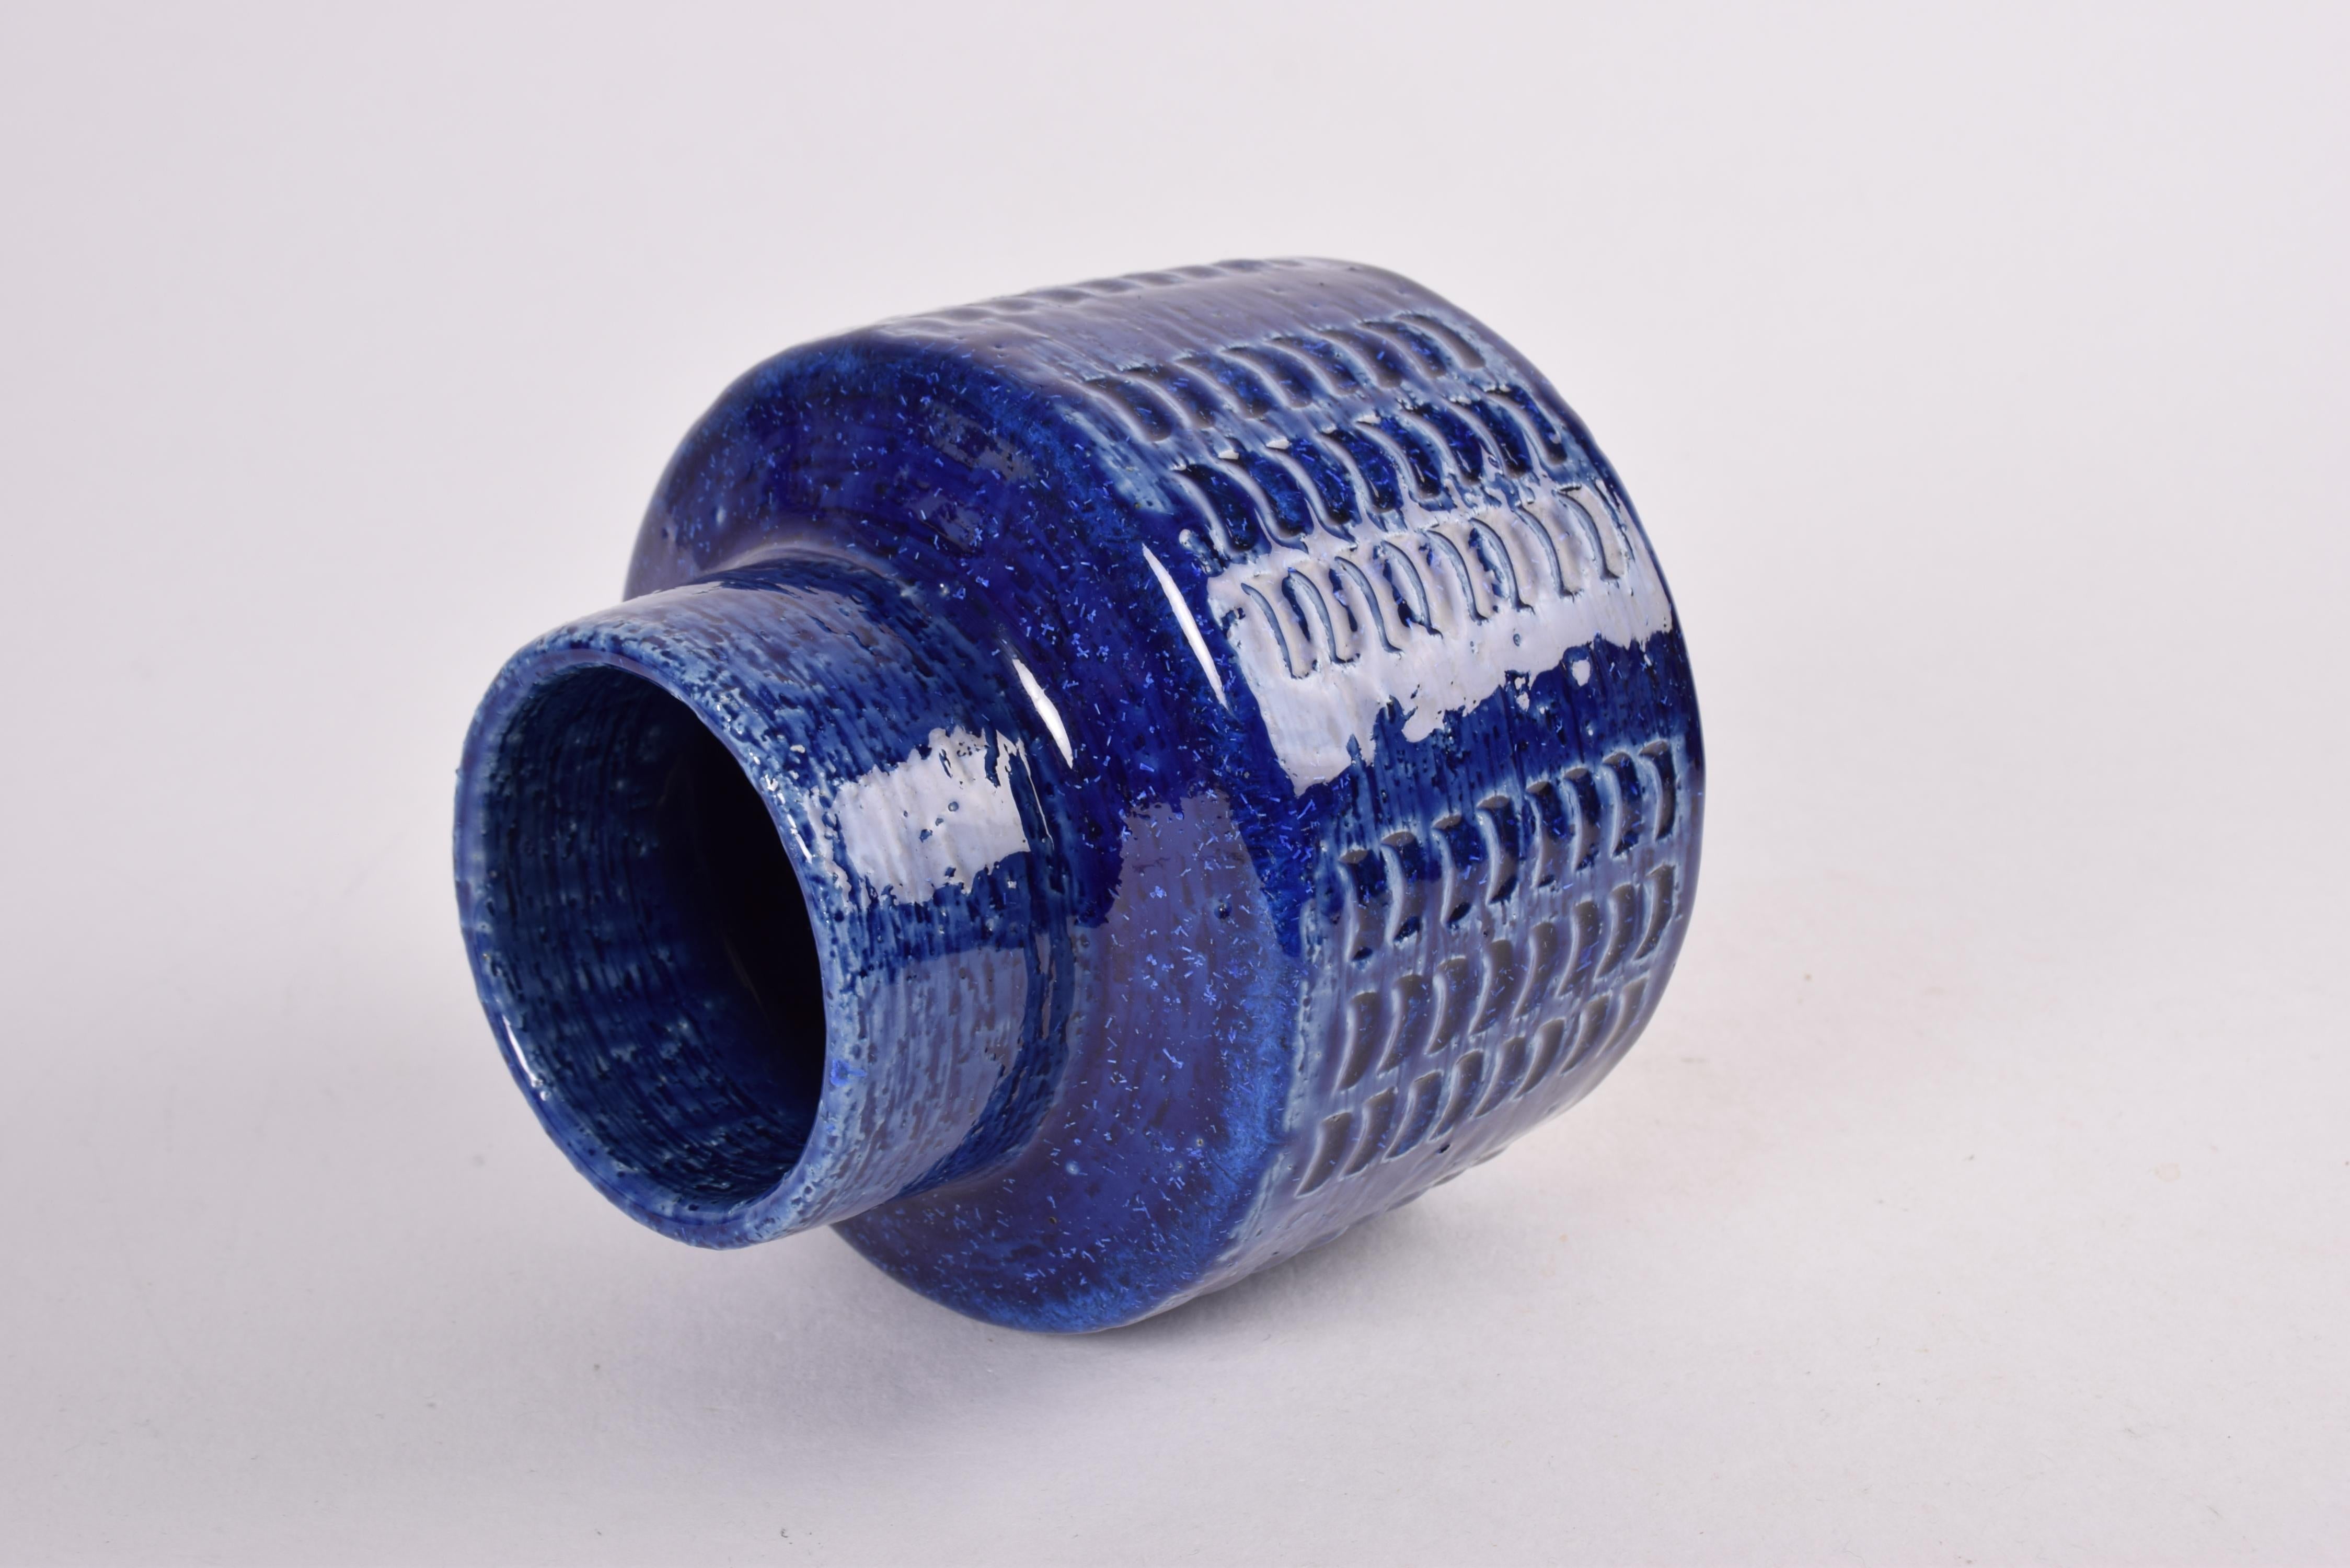 Scandinavian Modern Palshus Ceramic Vase Cobalt Blue by Per Linnemann-Schmidt, Danish 1960s For Sale